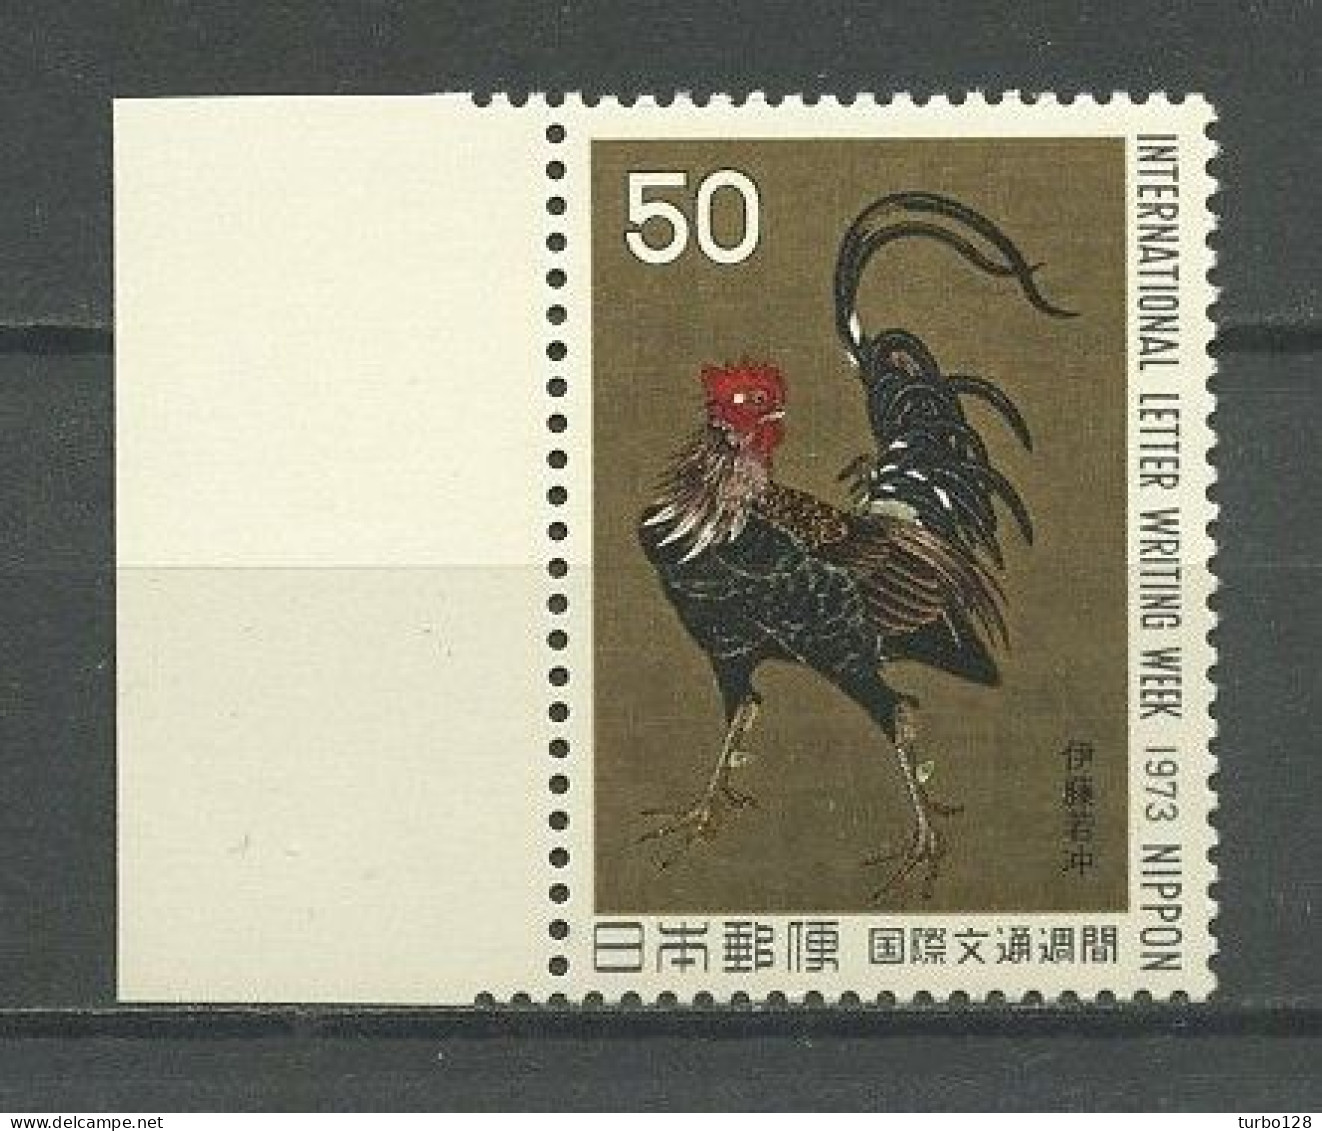 JAPON 1973 N° 1091 ** Neuf MNH Superbe C 1,25 € Faune Oiseaux Coq Guerrier De J. Ito La Lettre Peintures Birds Painting - Nuovi